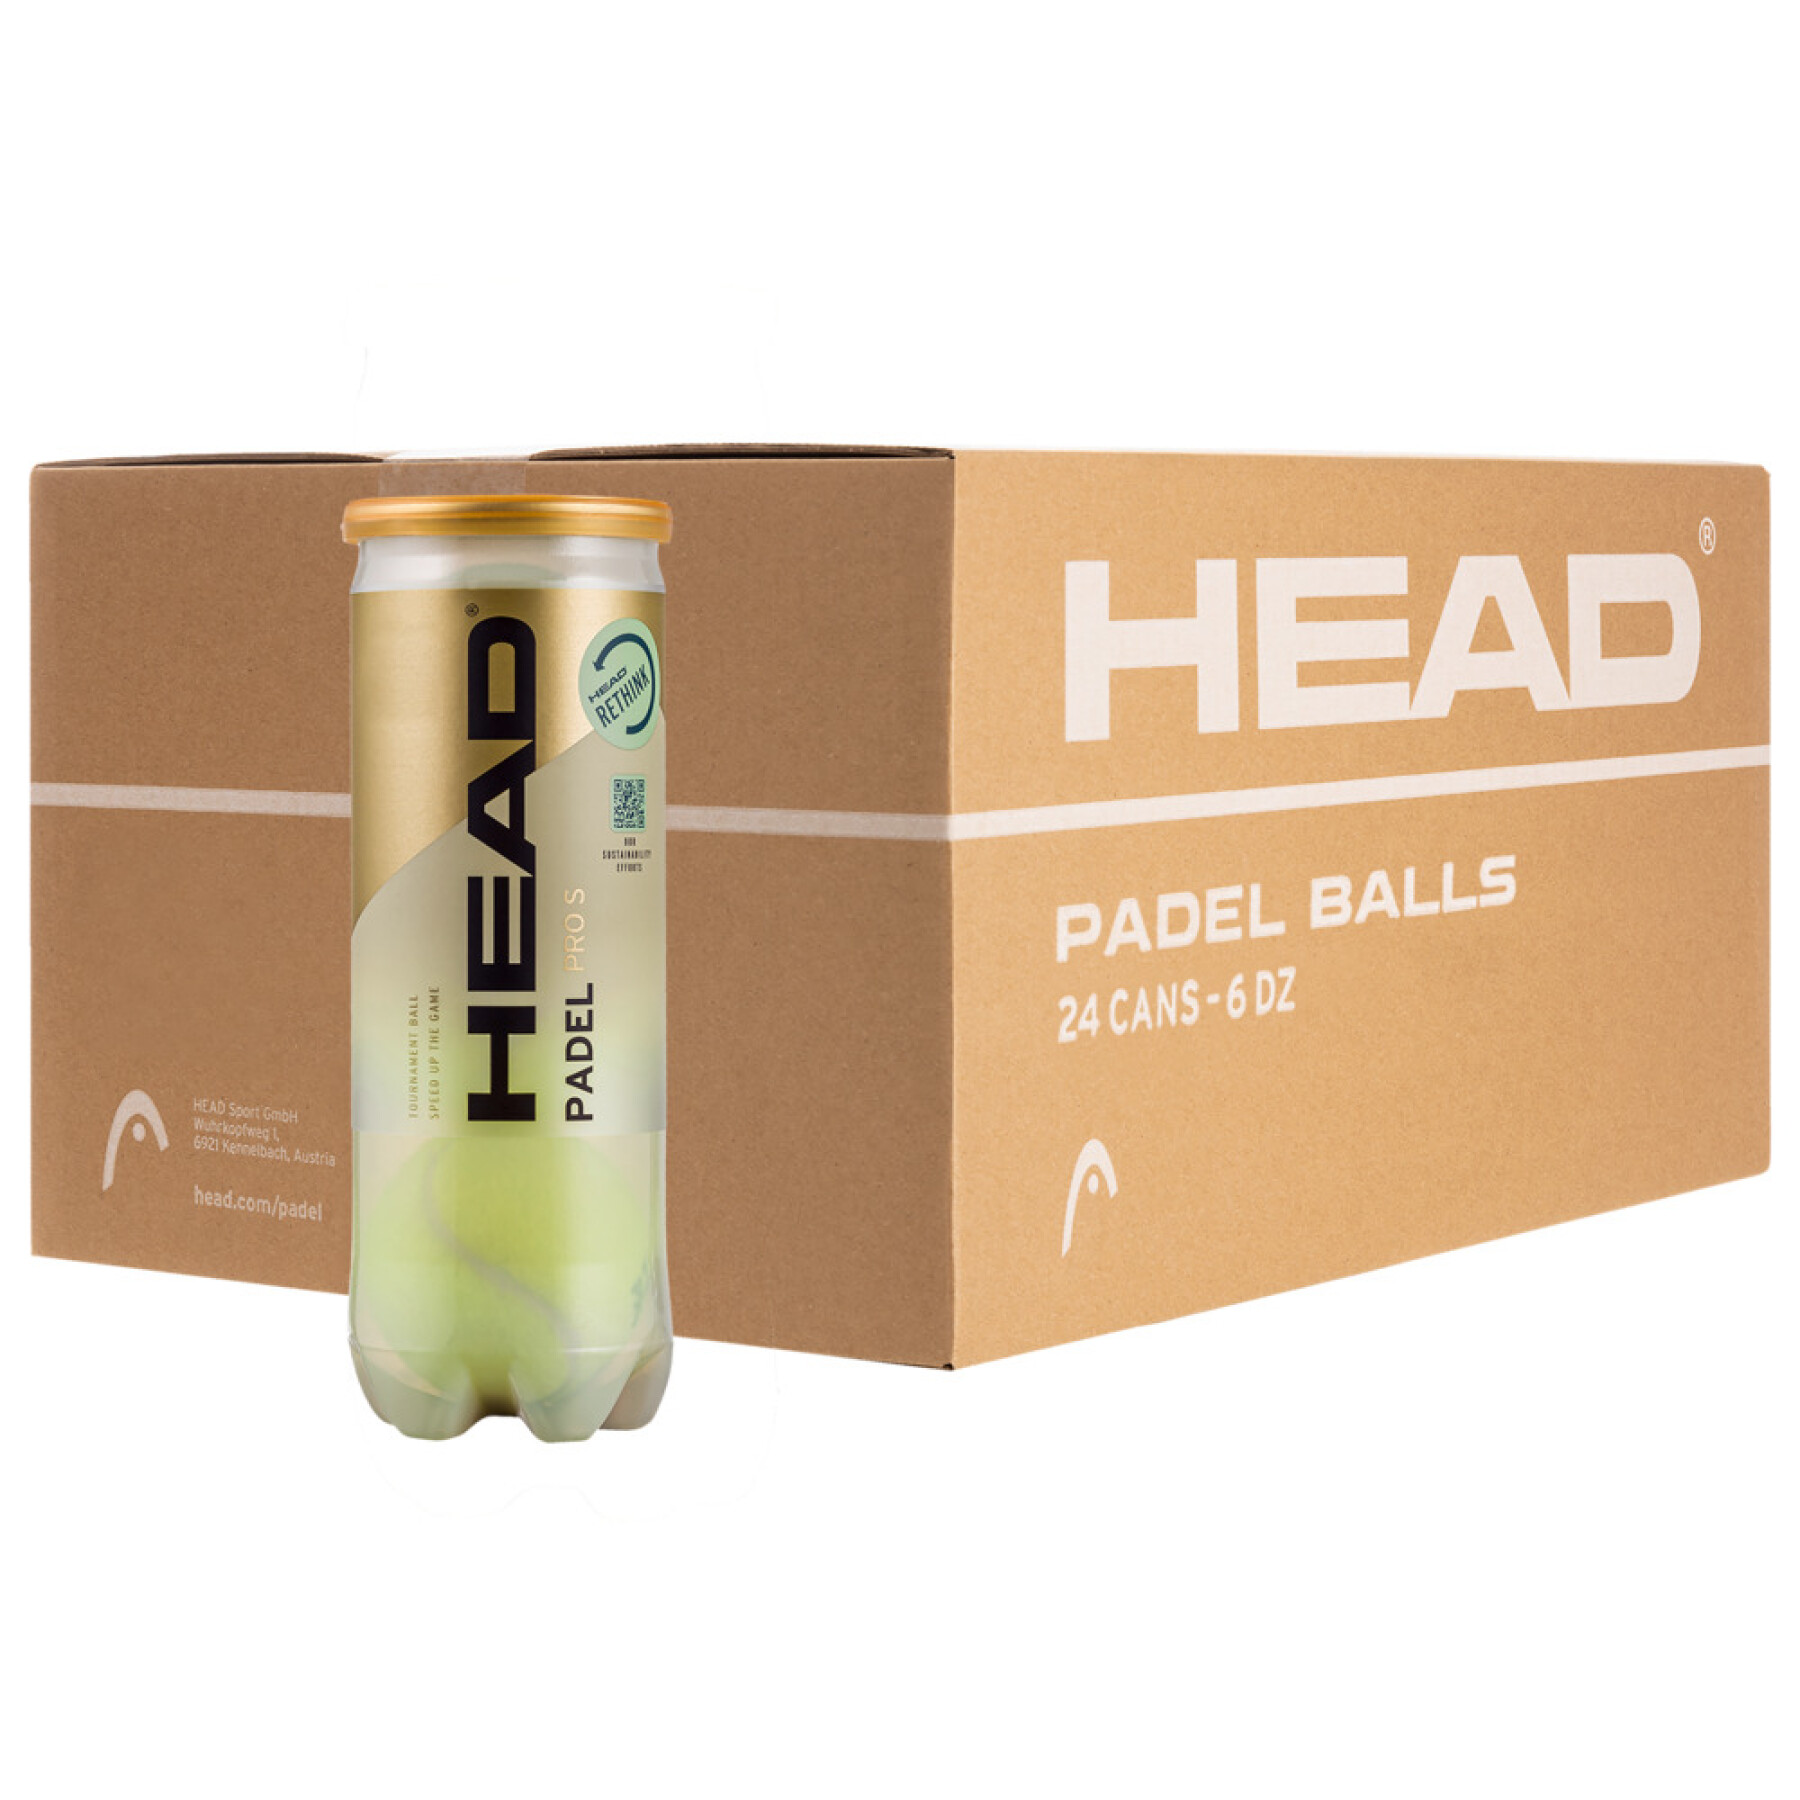 Tennisbal Head Padel Pro (x3)